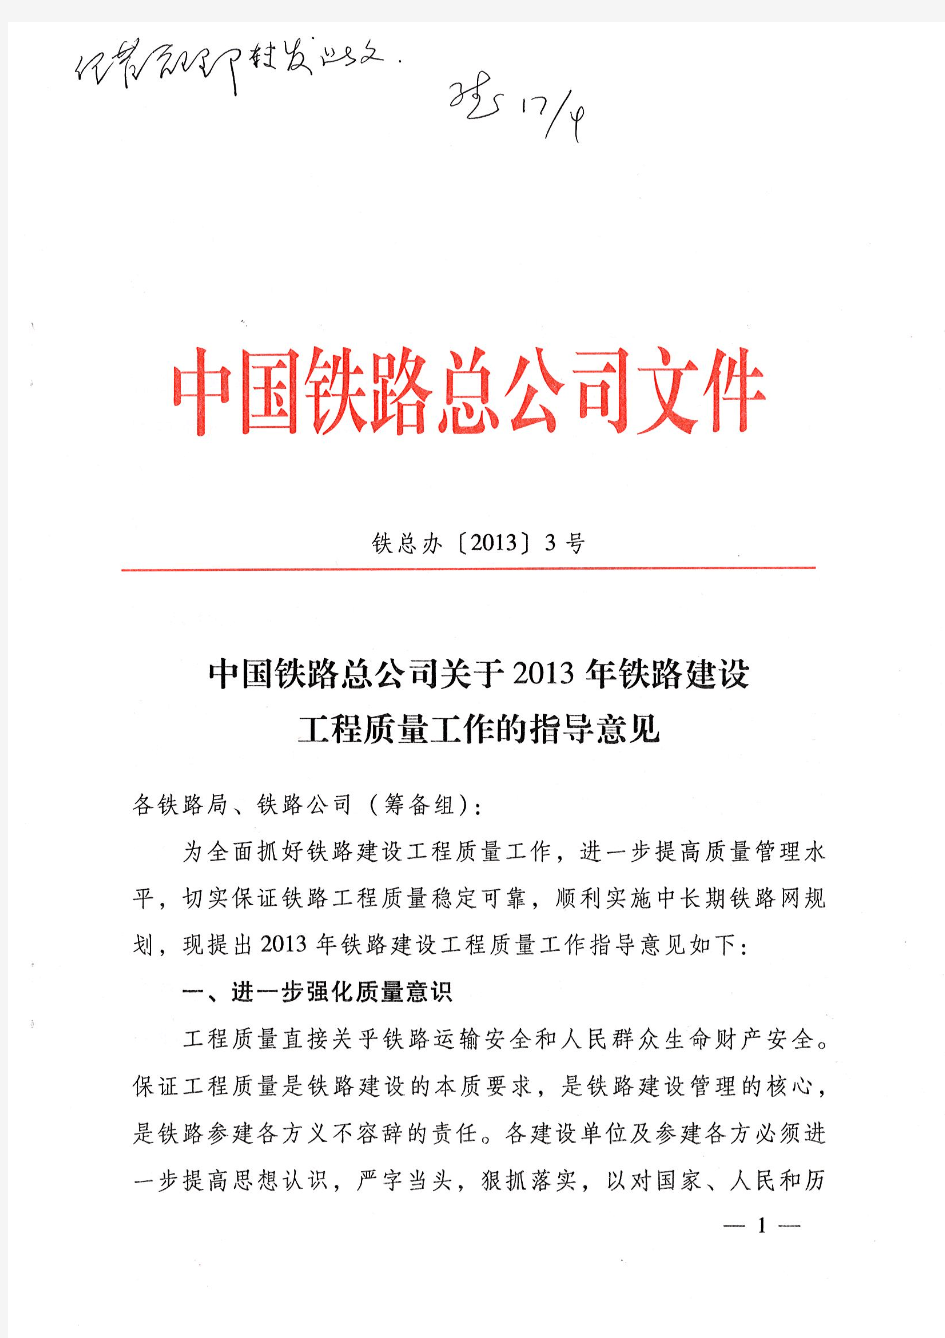 铁总办中国铁路总公司关于2013年铁路建设工程质量工作的指导意见【2013】3号文